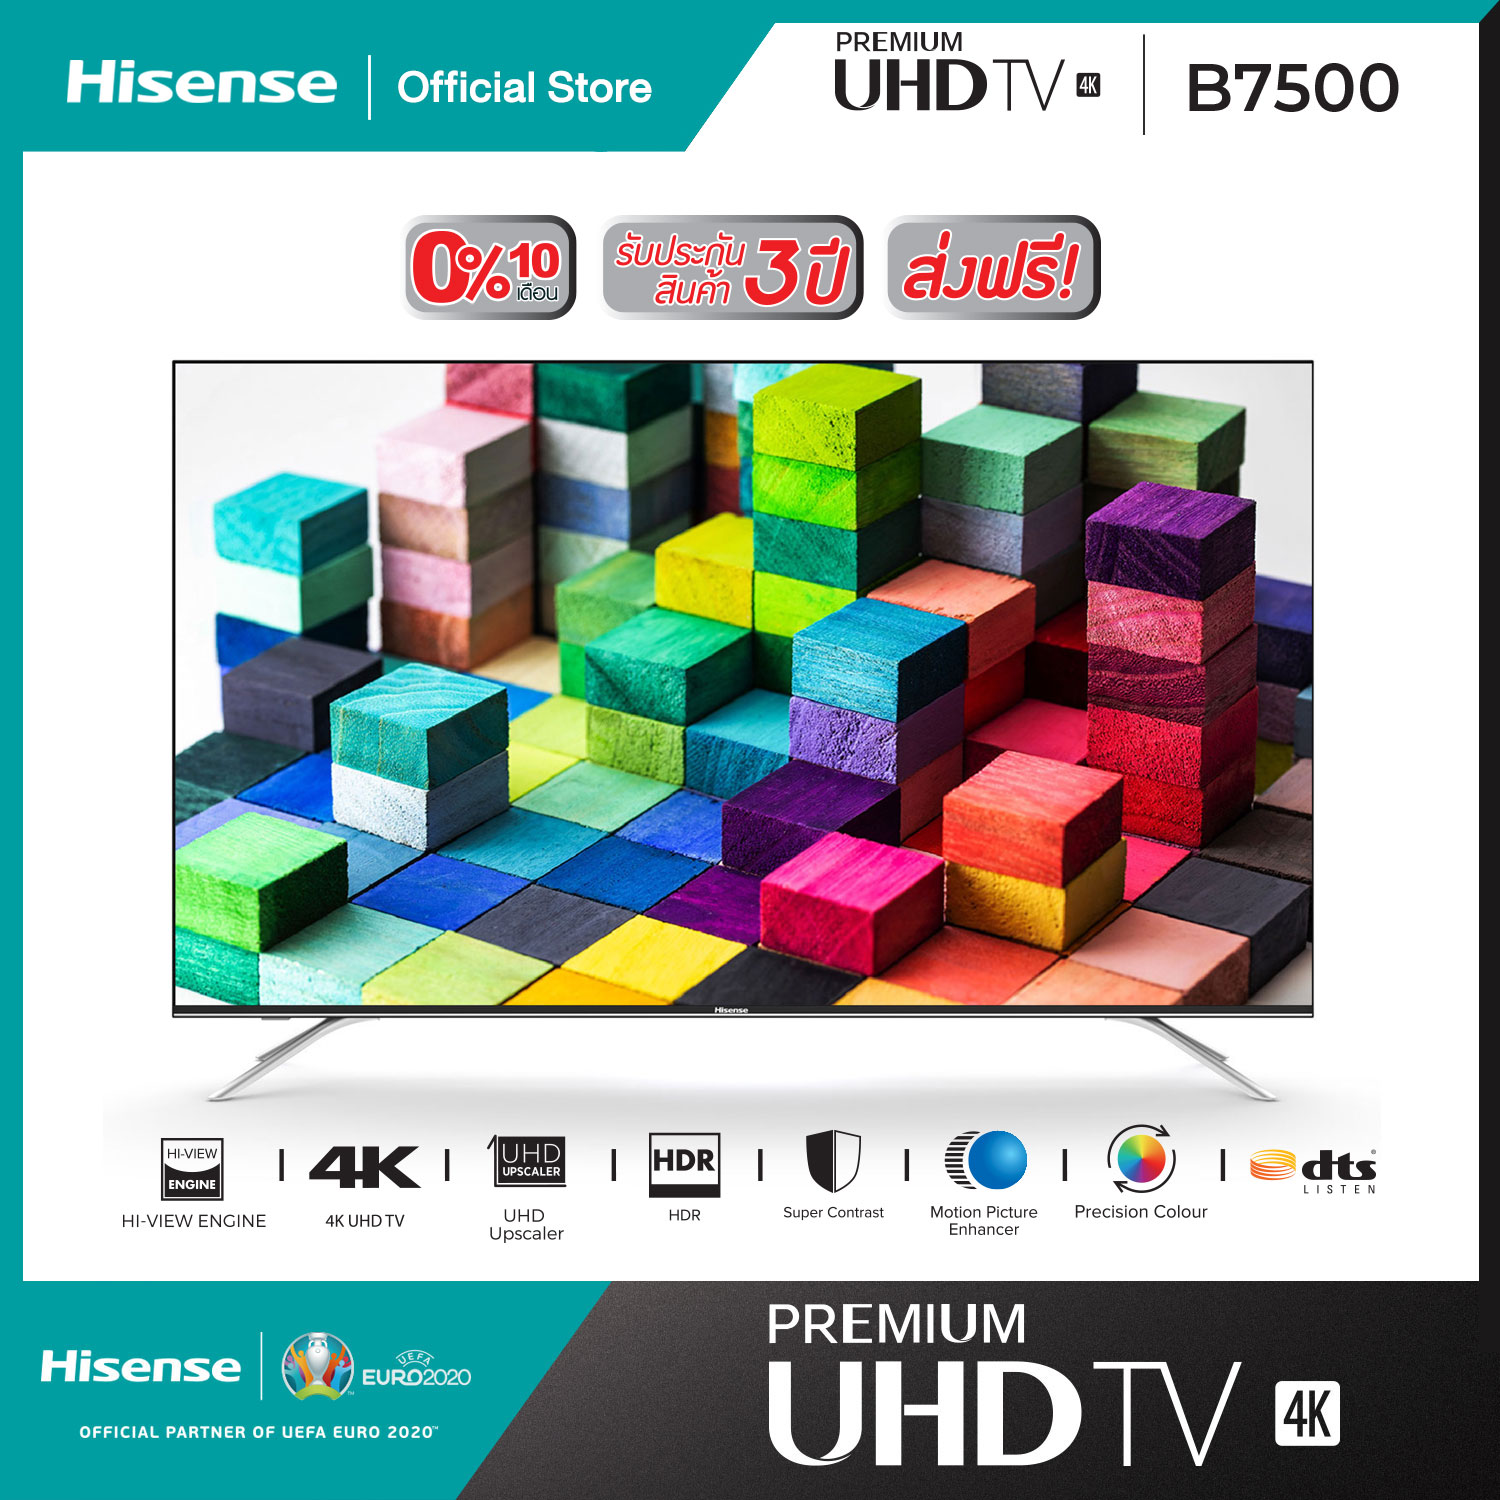 ทีวี Hisense Premium UHD SmartTV ขนาด 50 นิ้ว รุ่น 50B7500 โมเดล 2019 [ผ่อน 0%
นาน 10 เดือน]